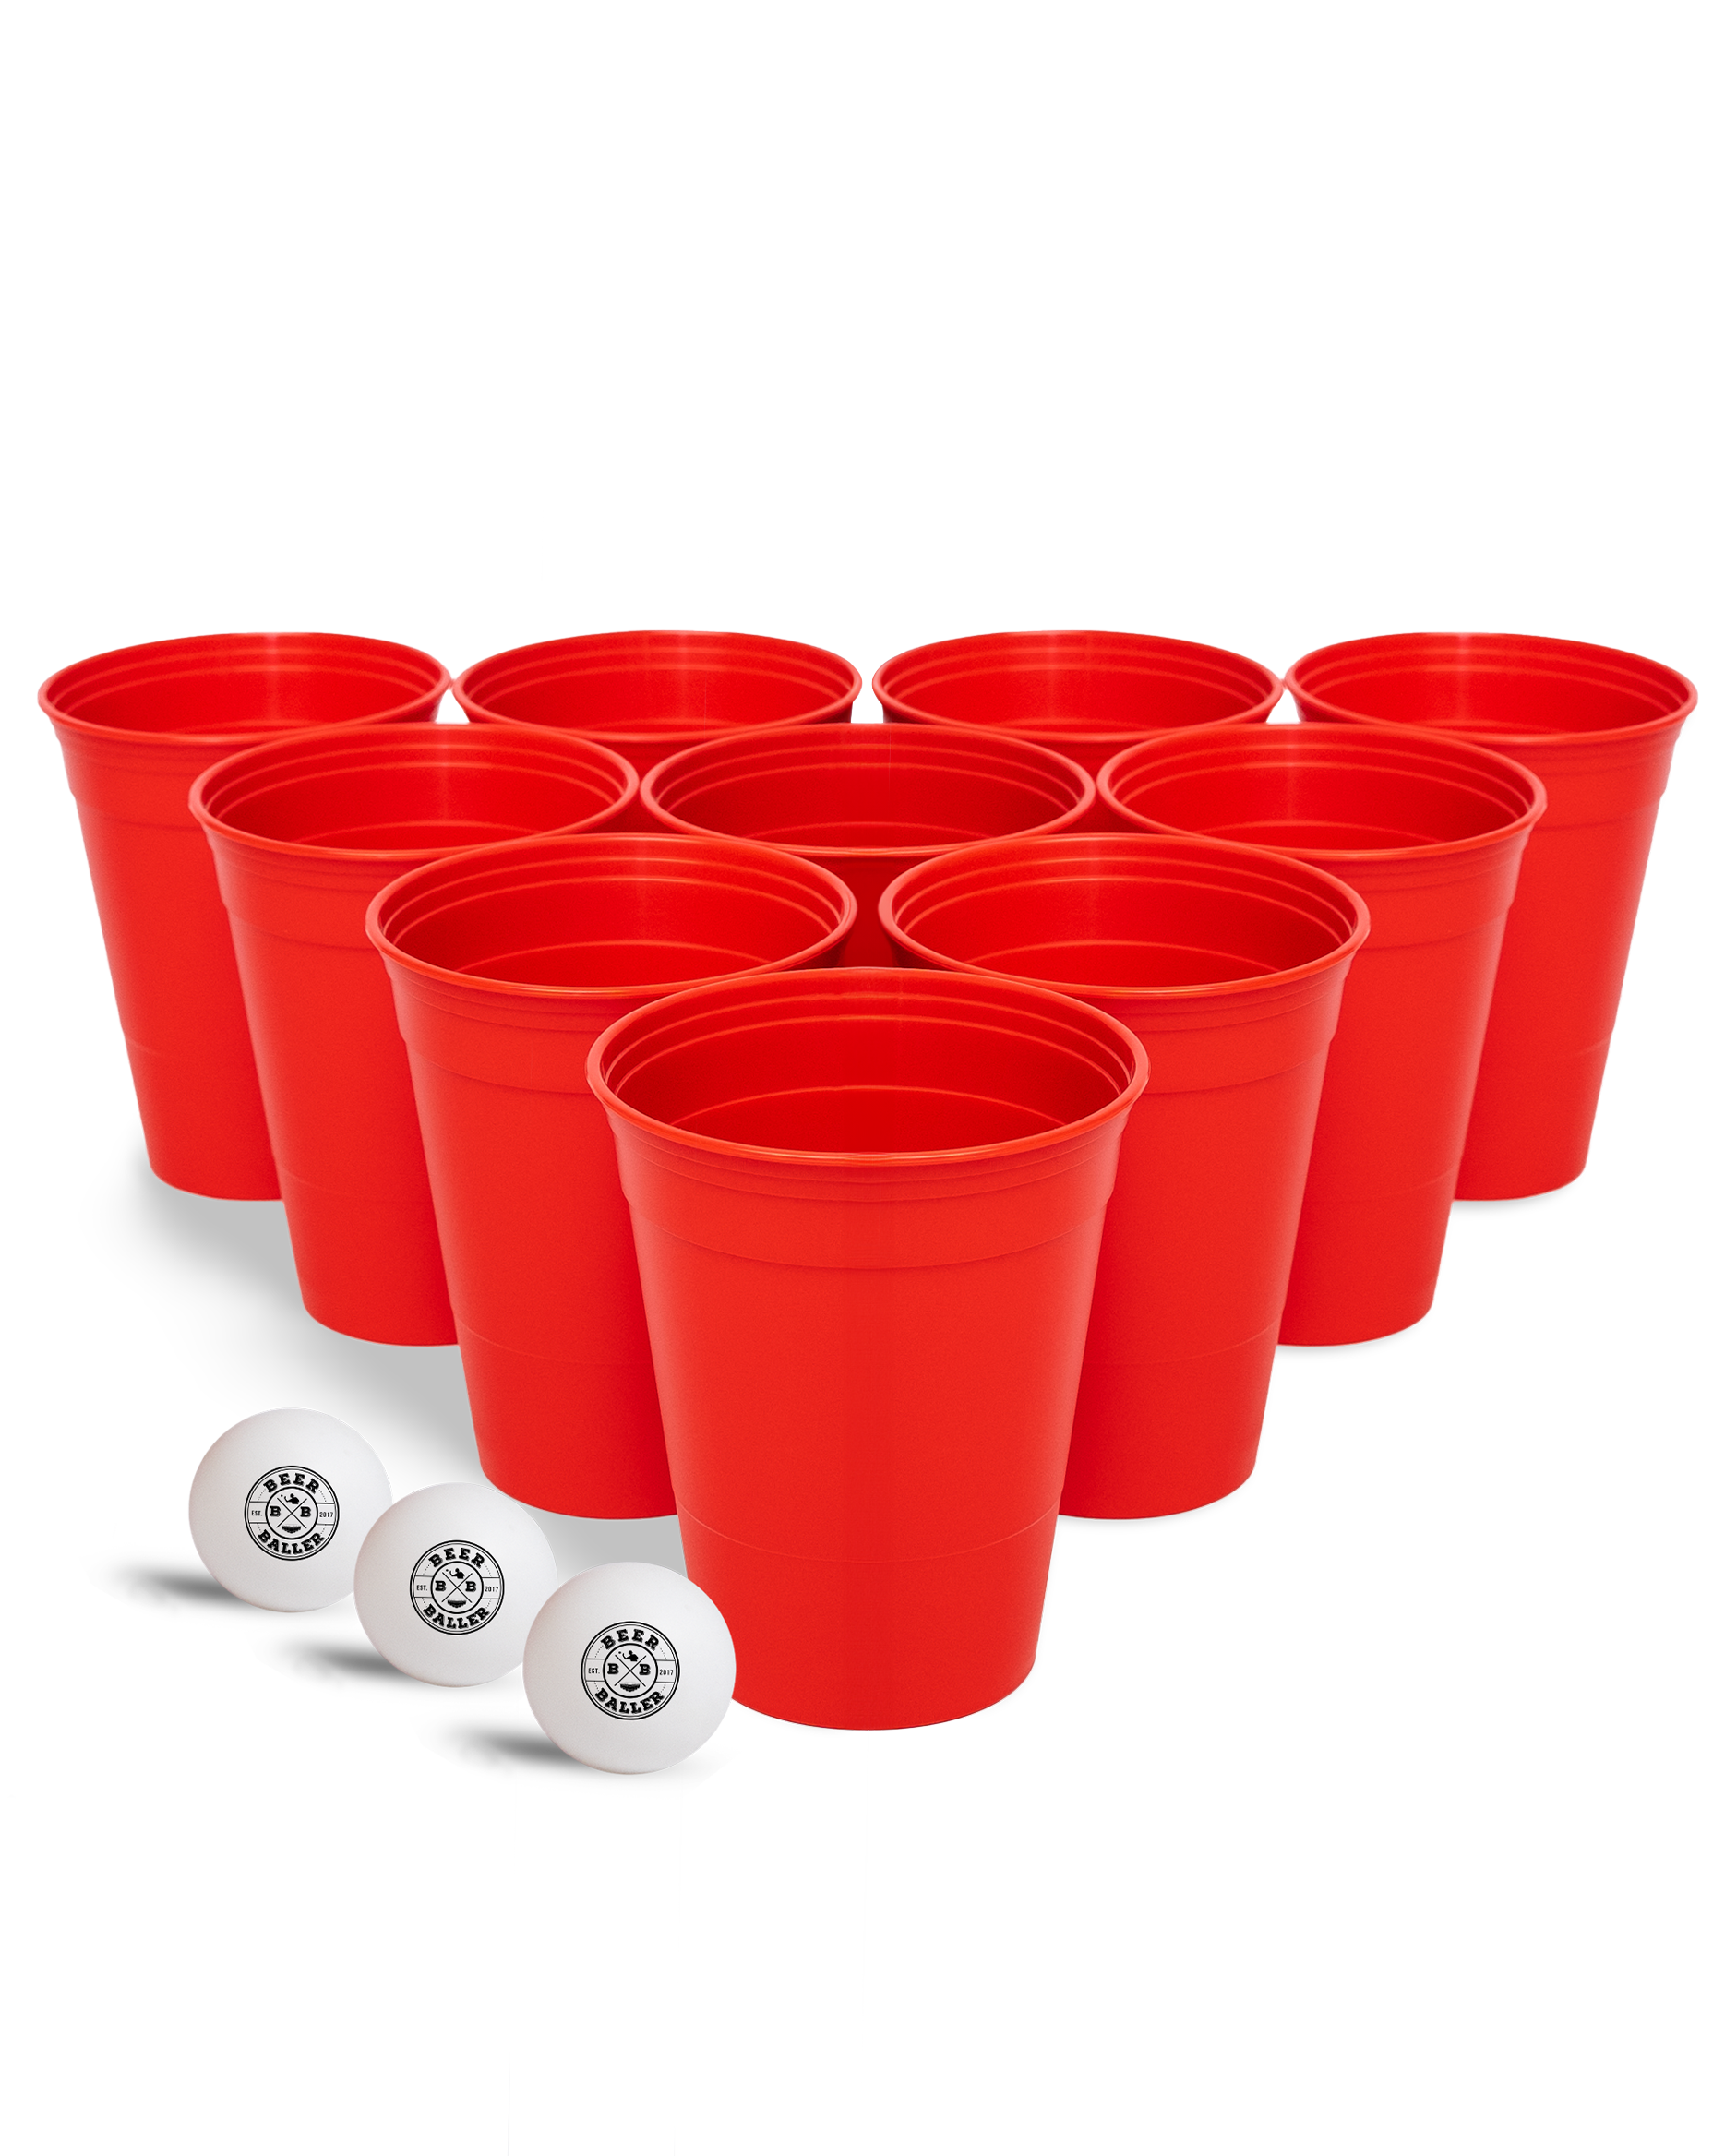 UNBREAKABLE Beer Pong Becher - Mehrweg Hartplastik Cups